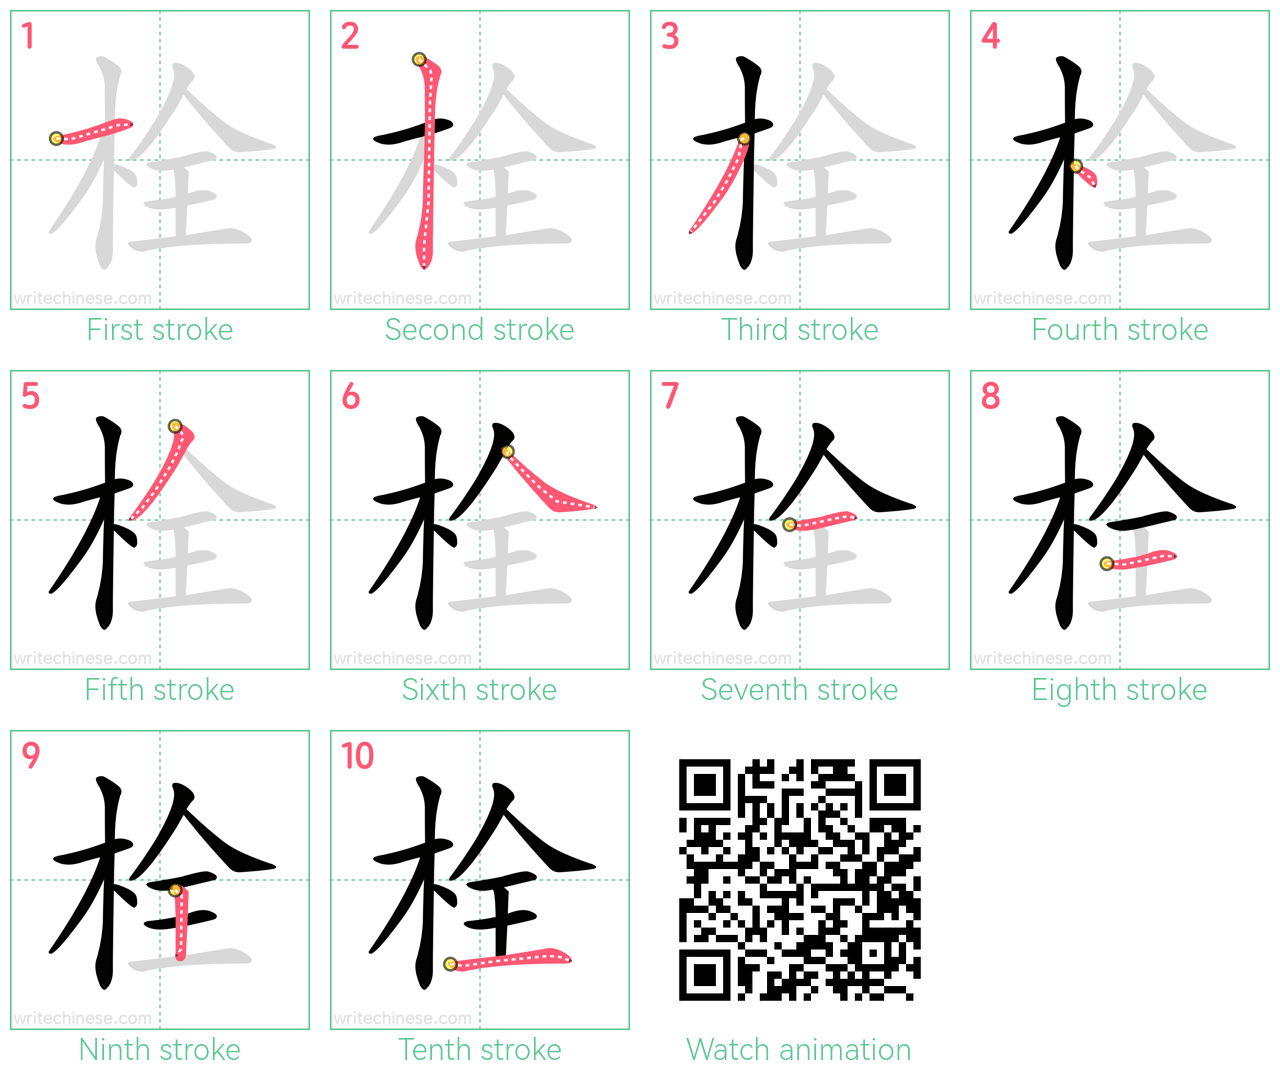 栓 step-by-step stroke order diagrams